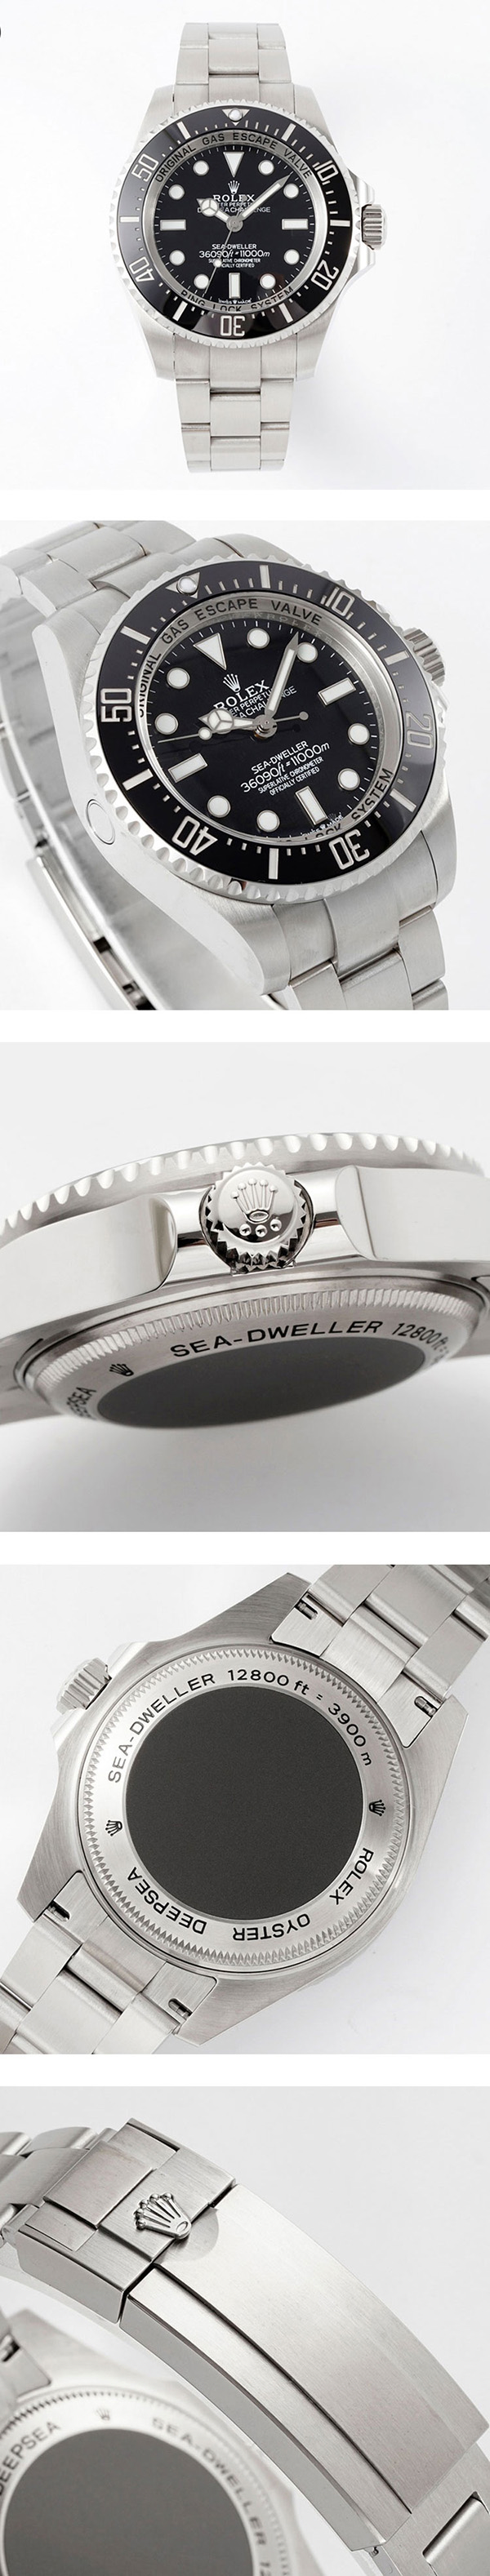 【人気の時計ブランド】ロレックス シードゥエラーコピー時計 Ref.126067、品質に立ち向かえ